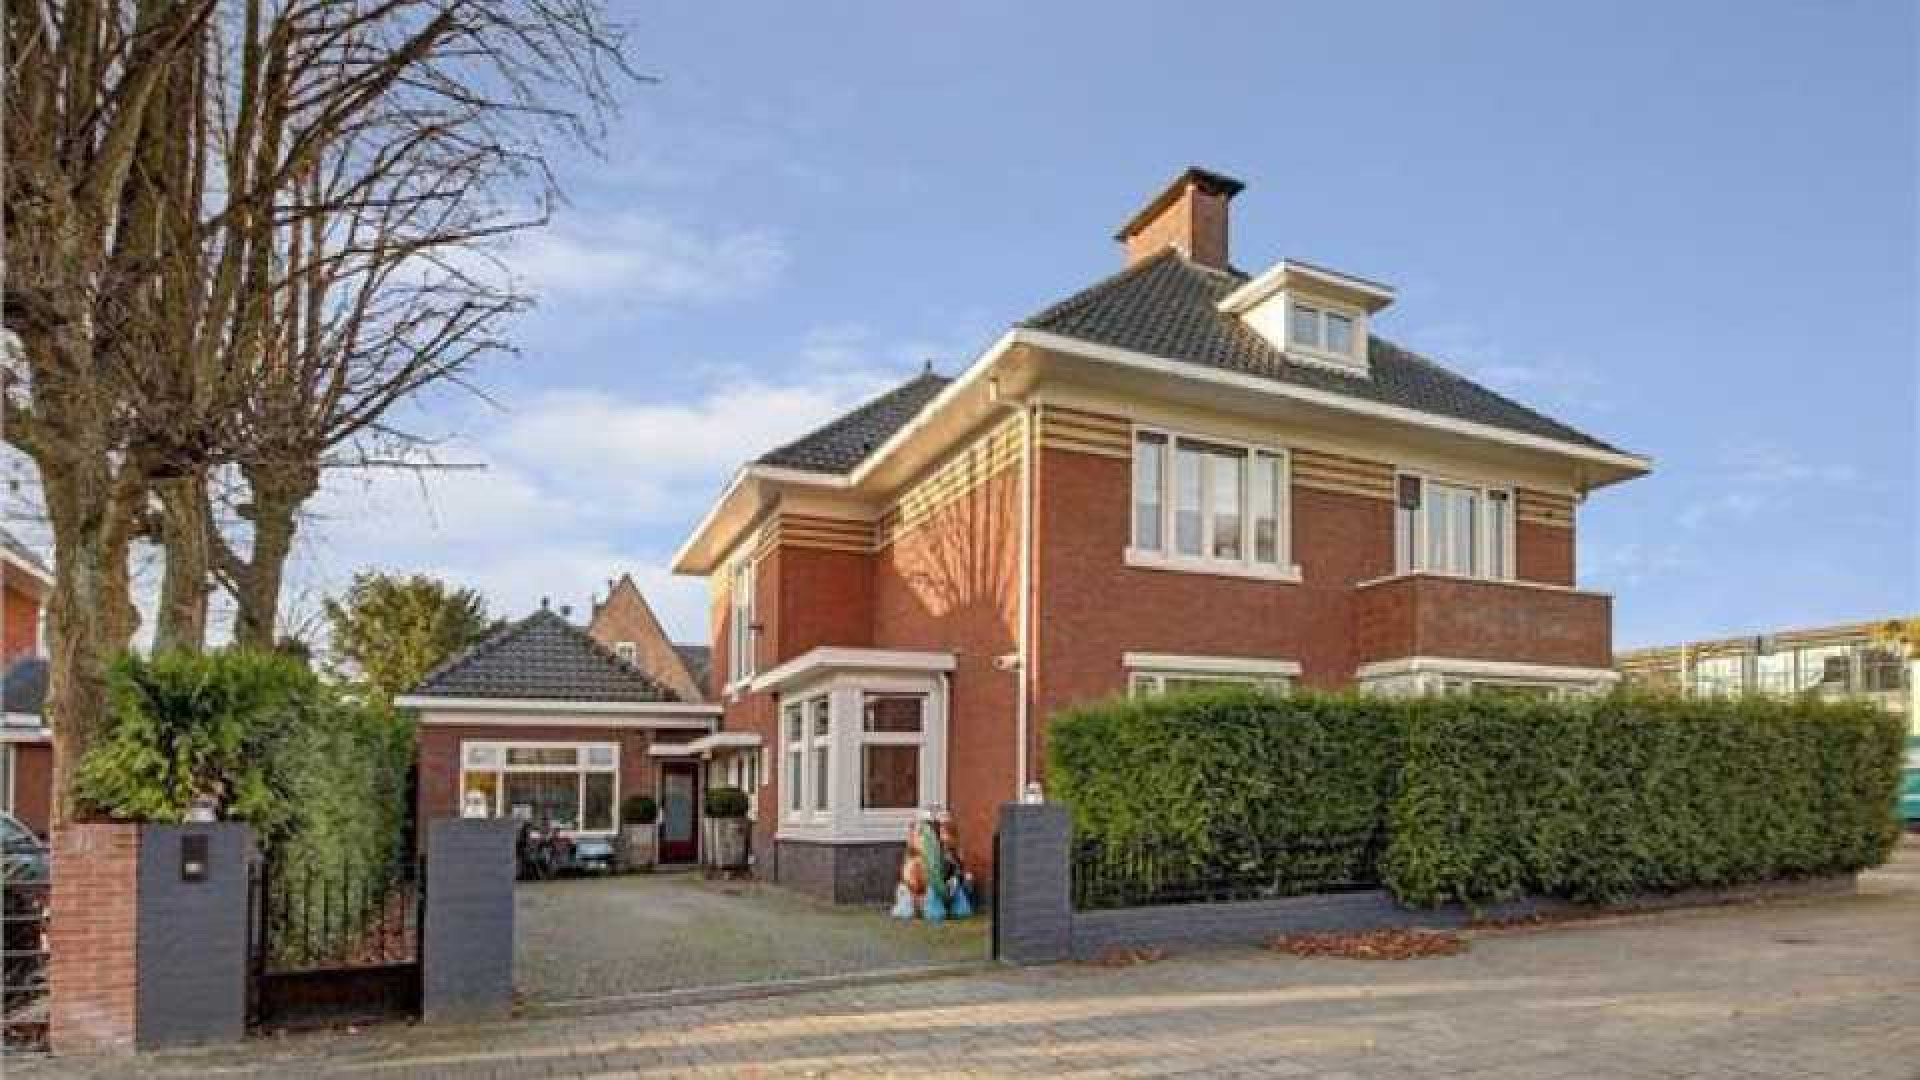 Frank Rijkaard koopt miljoenen villa in Amsterdam Zuid. Zie foto's 1